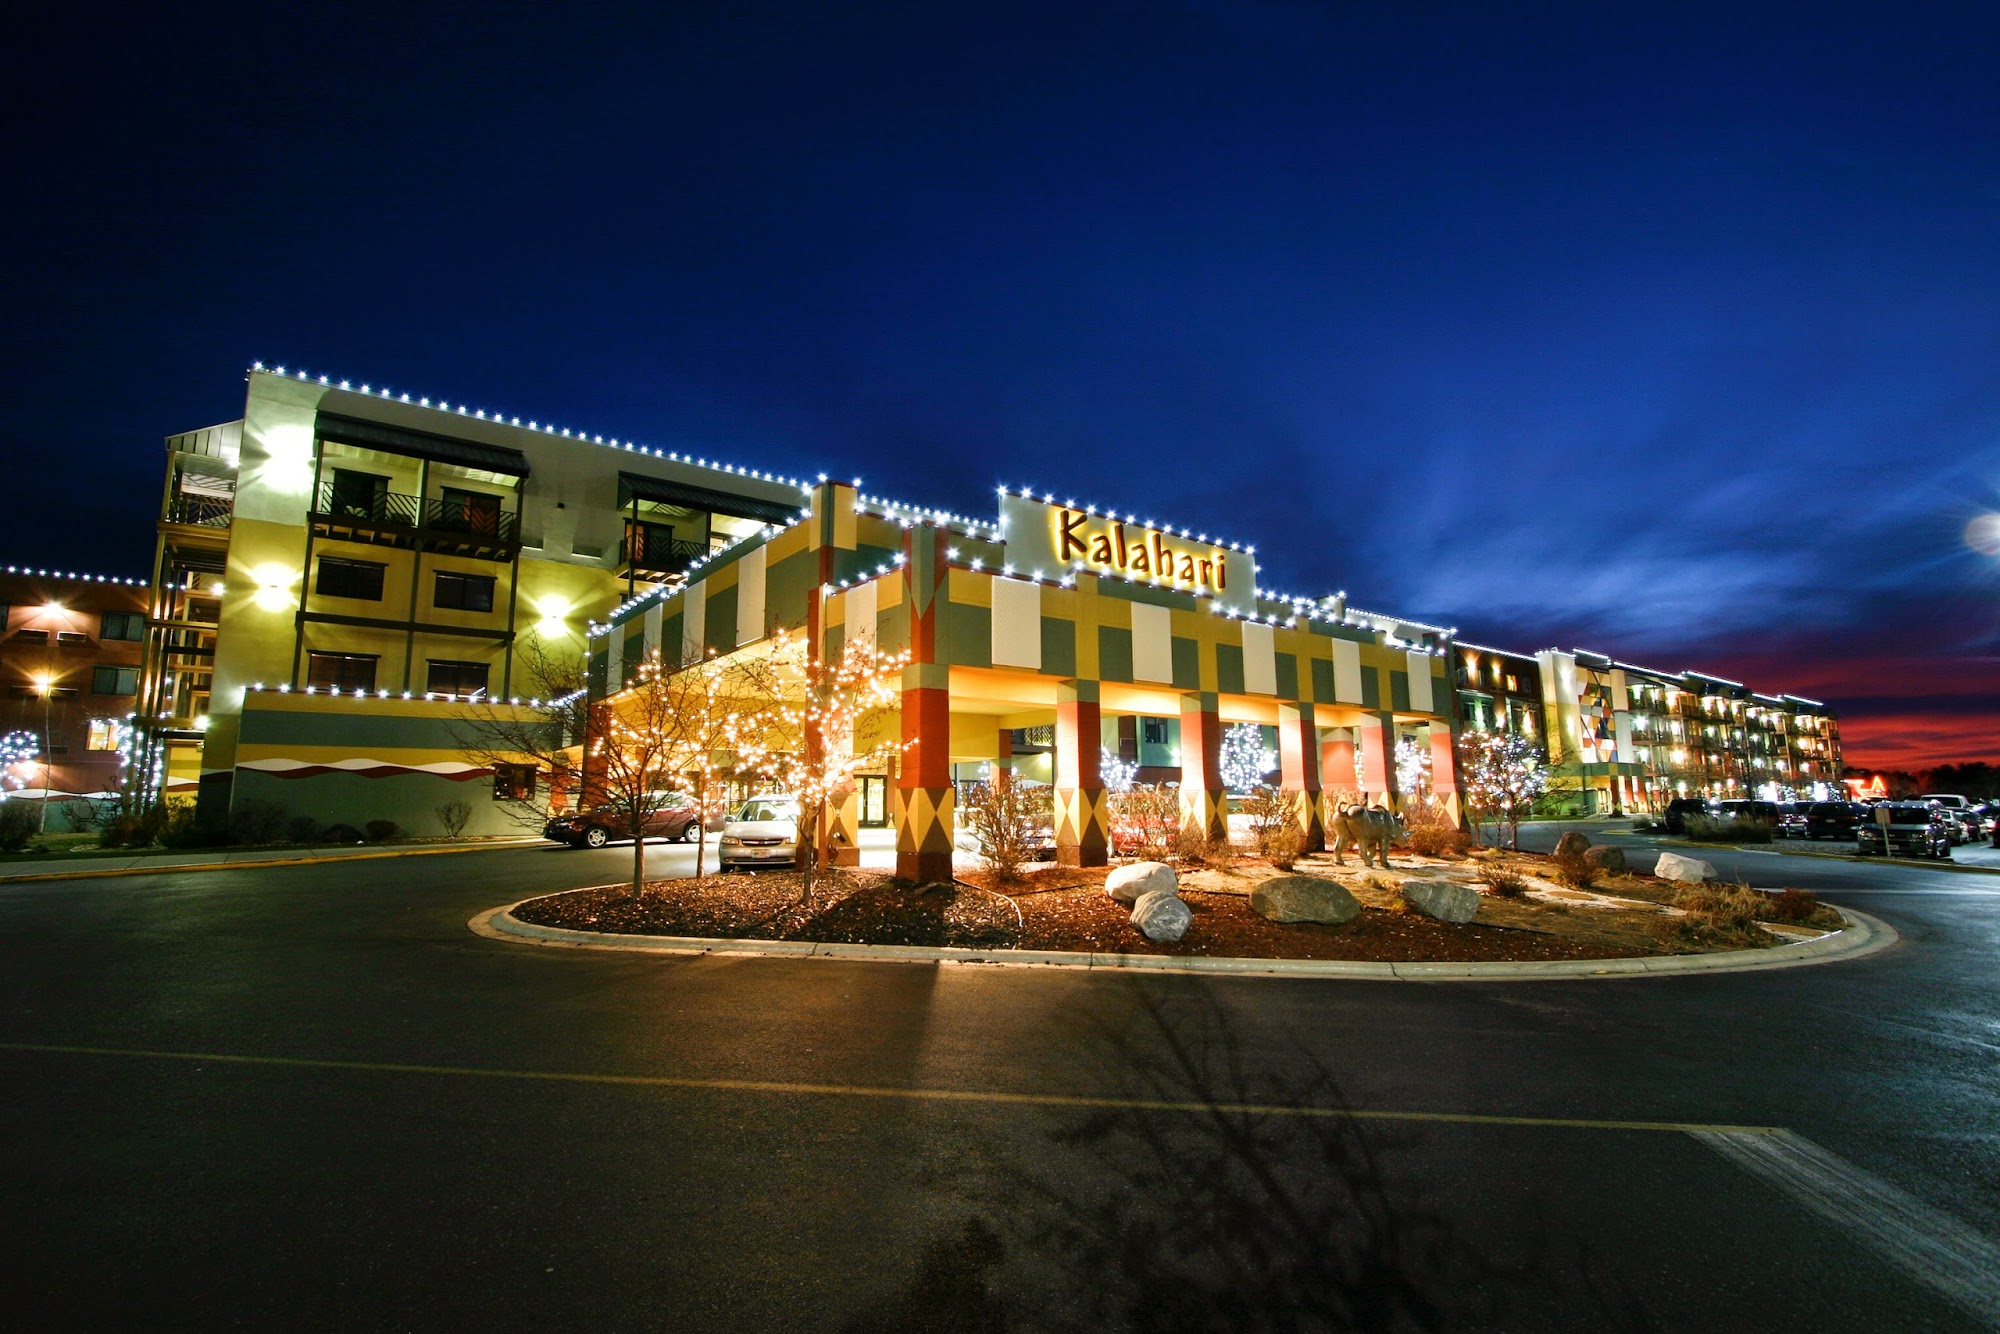 Kalahari Resorts & Conventions - Wisconsin Dells